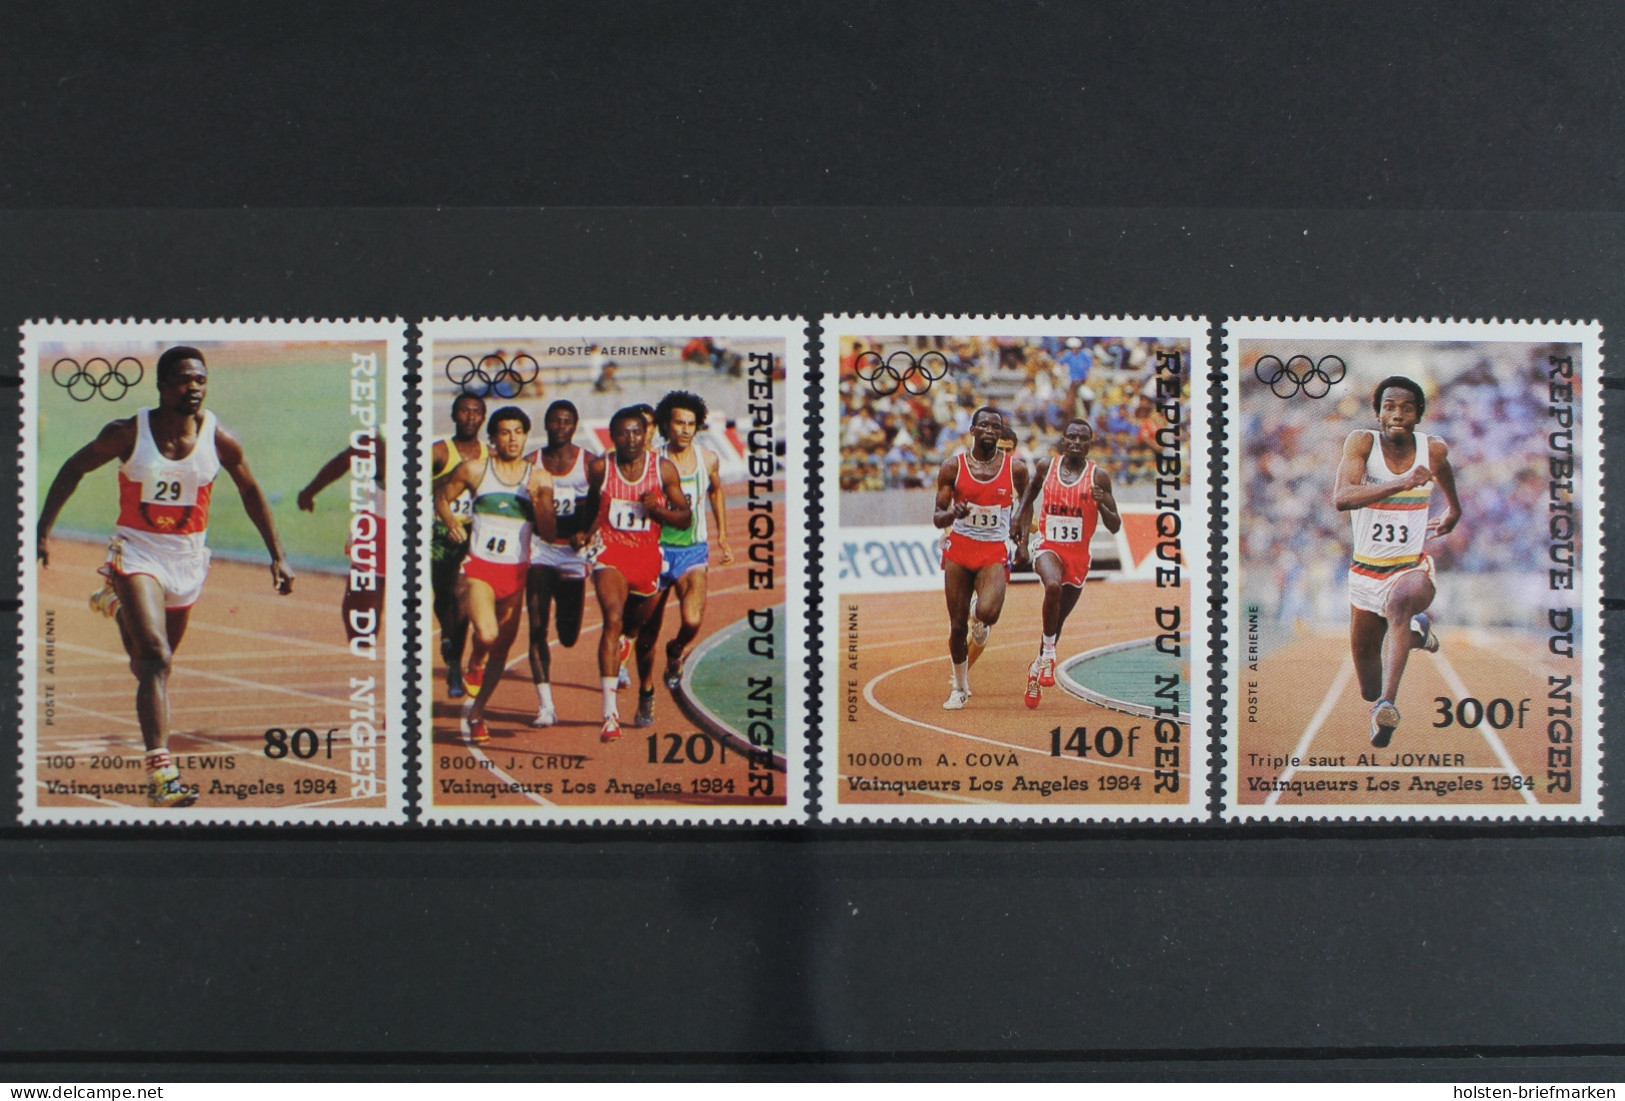 Niger, Olympiade, MiNr. 900-903, Postfrisch - Niger (1960-...)